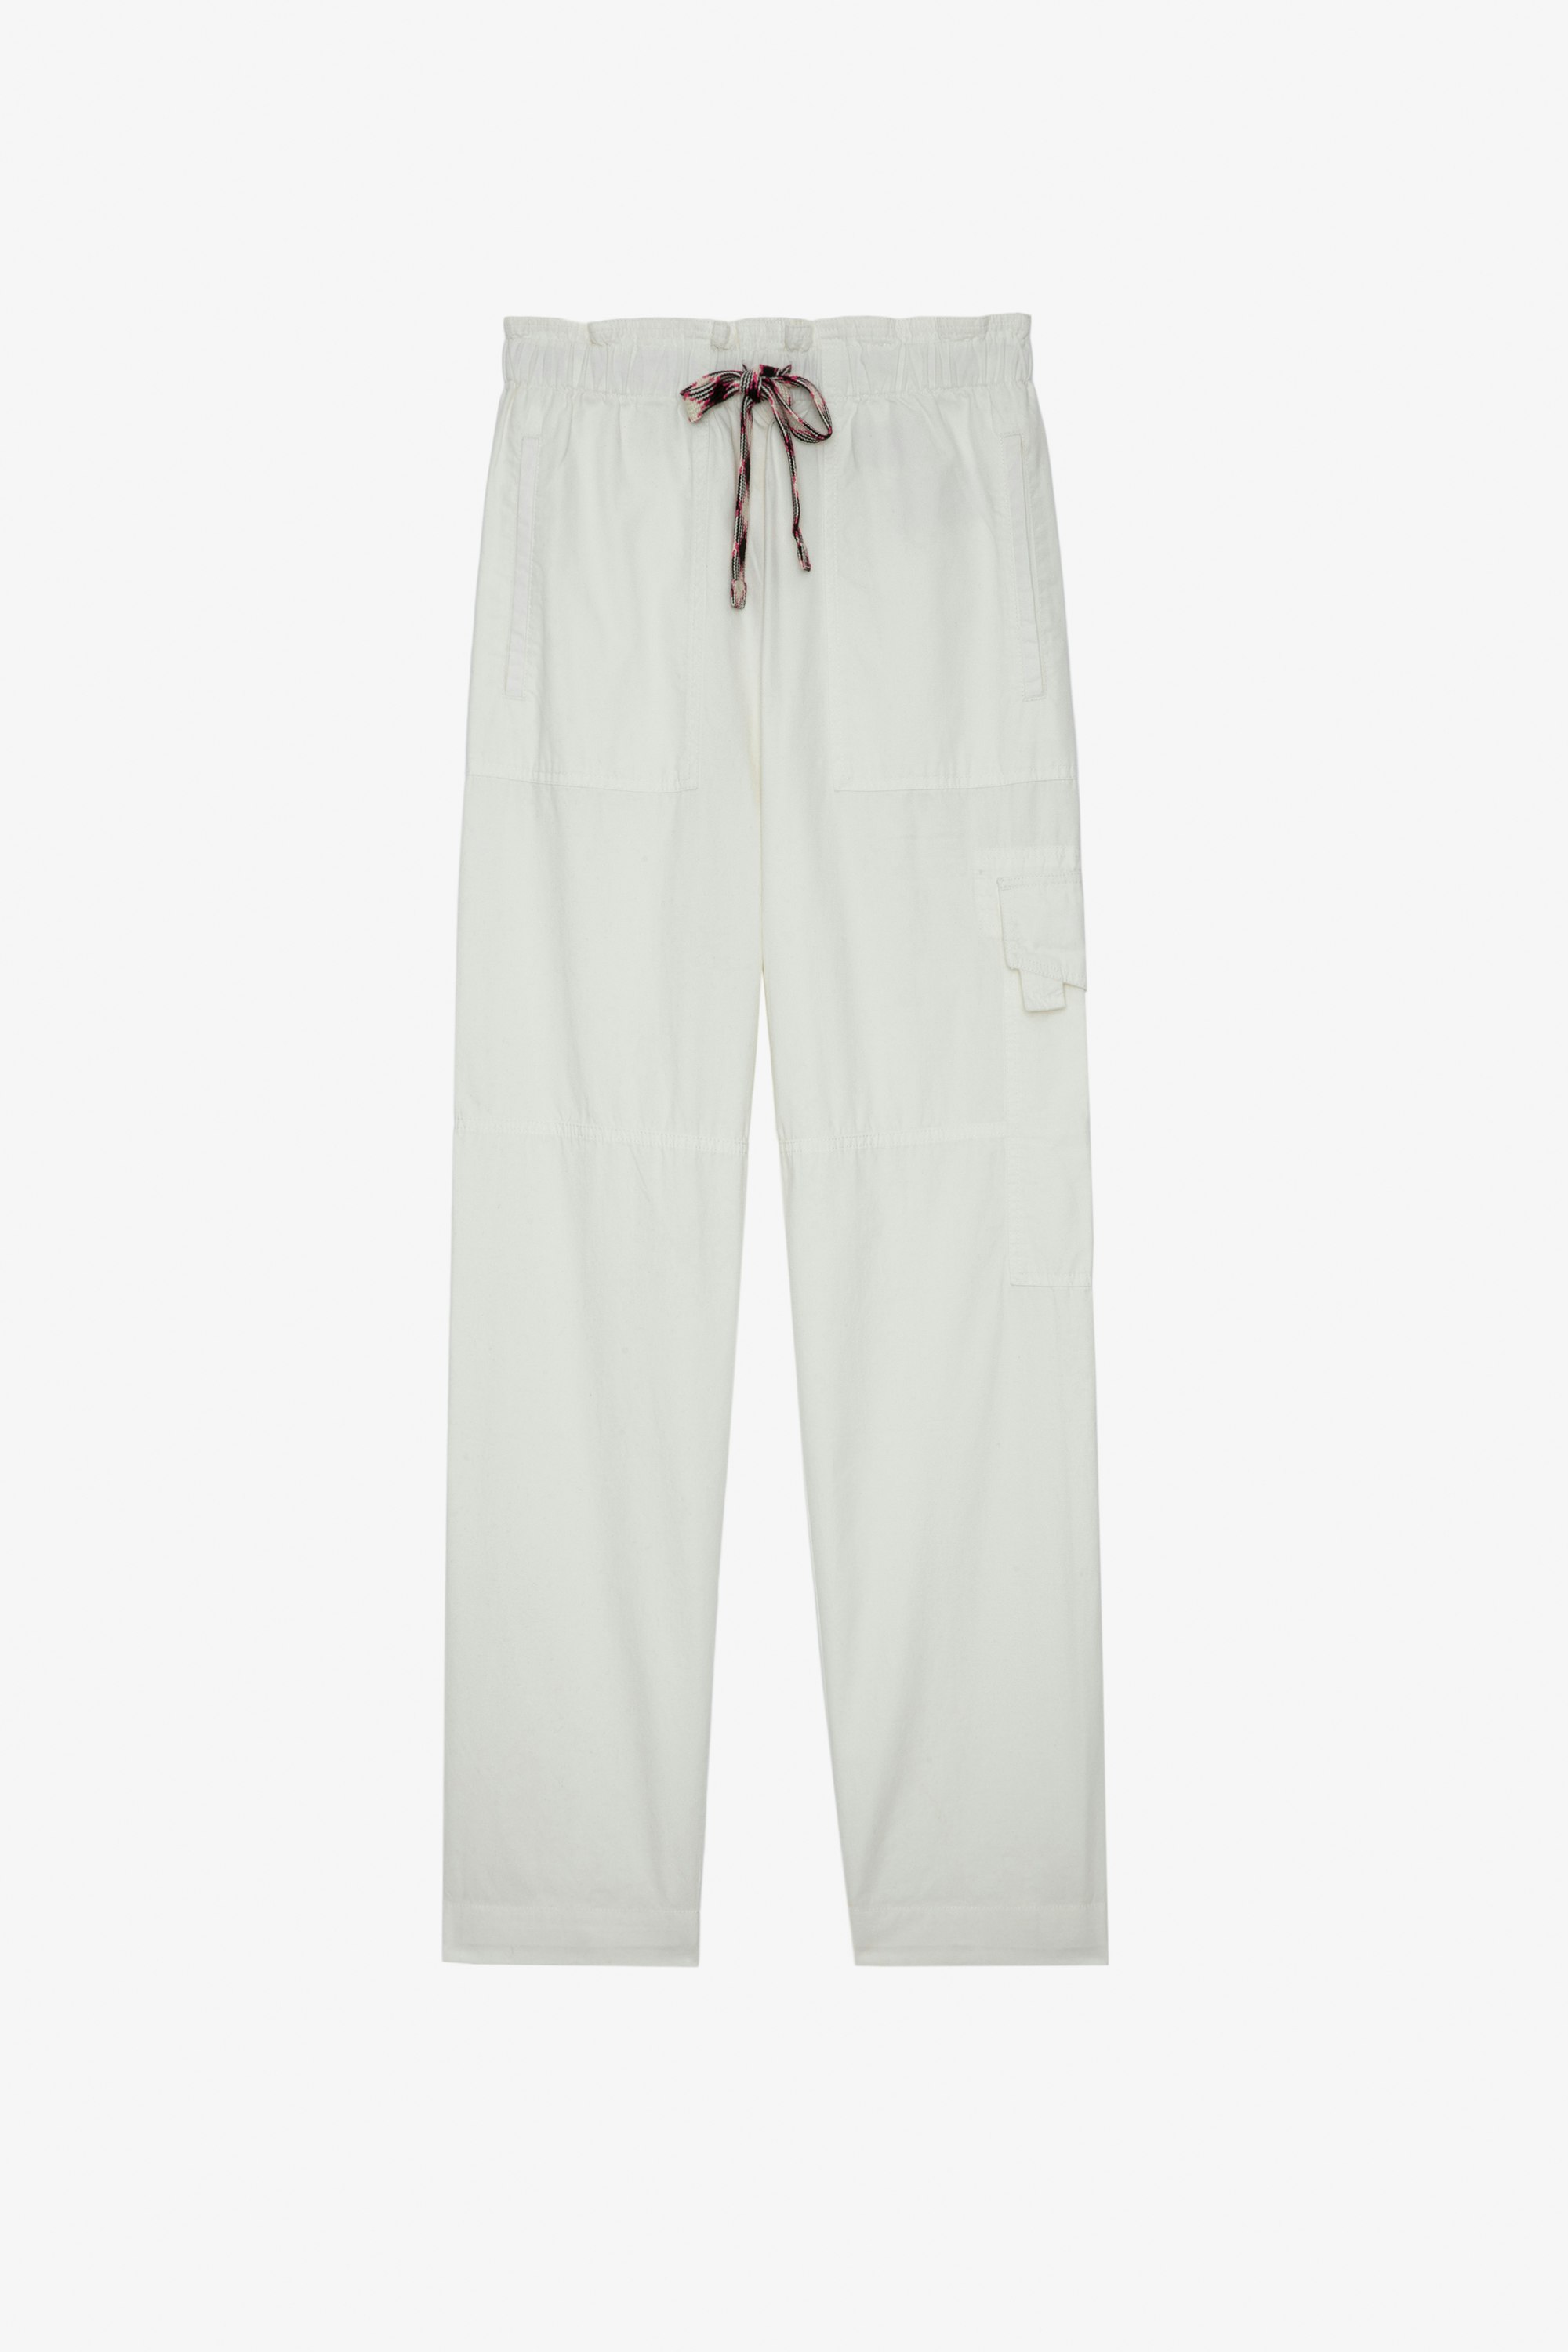 Pantalon Plumy Pantalon en coton blanc munie d'une ceinture Femme